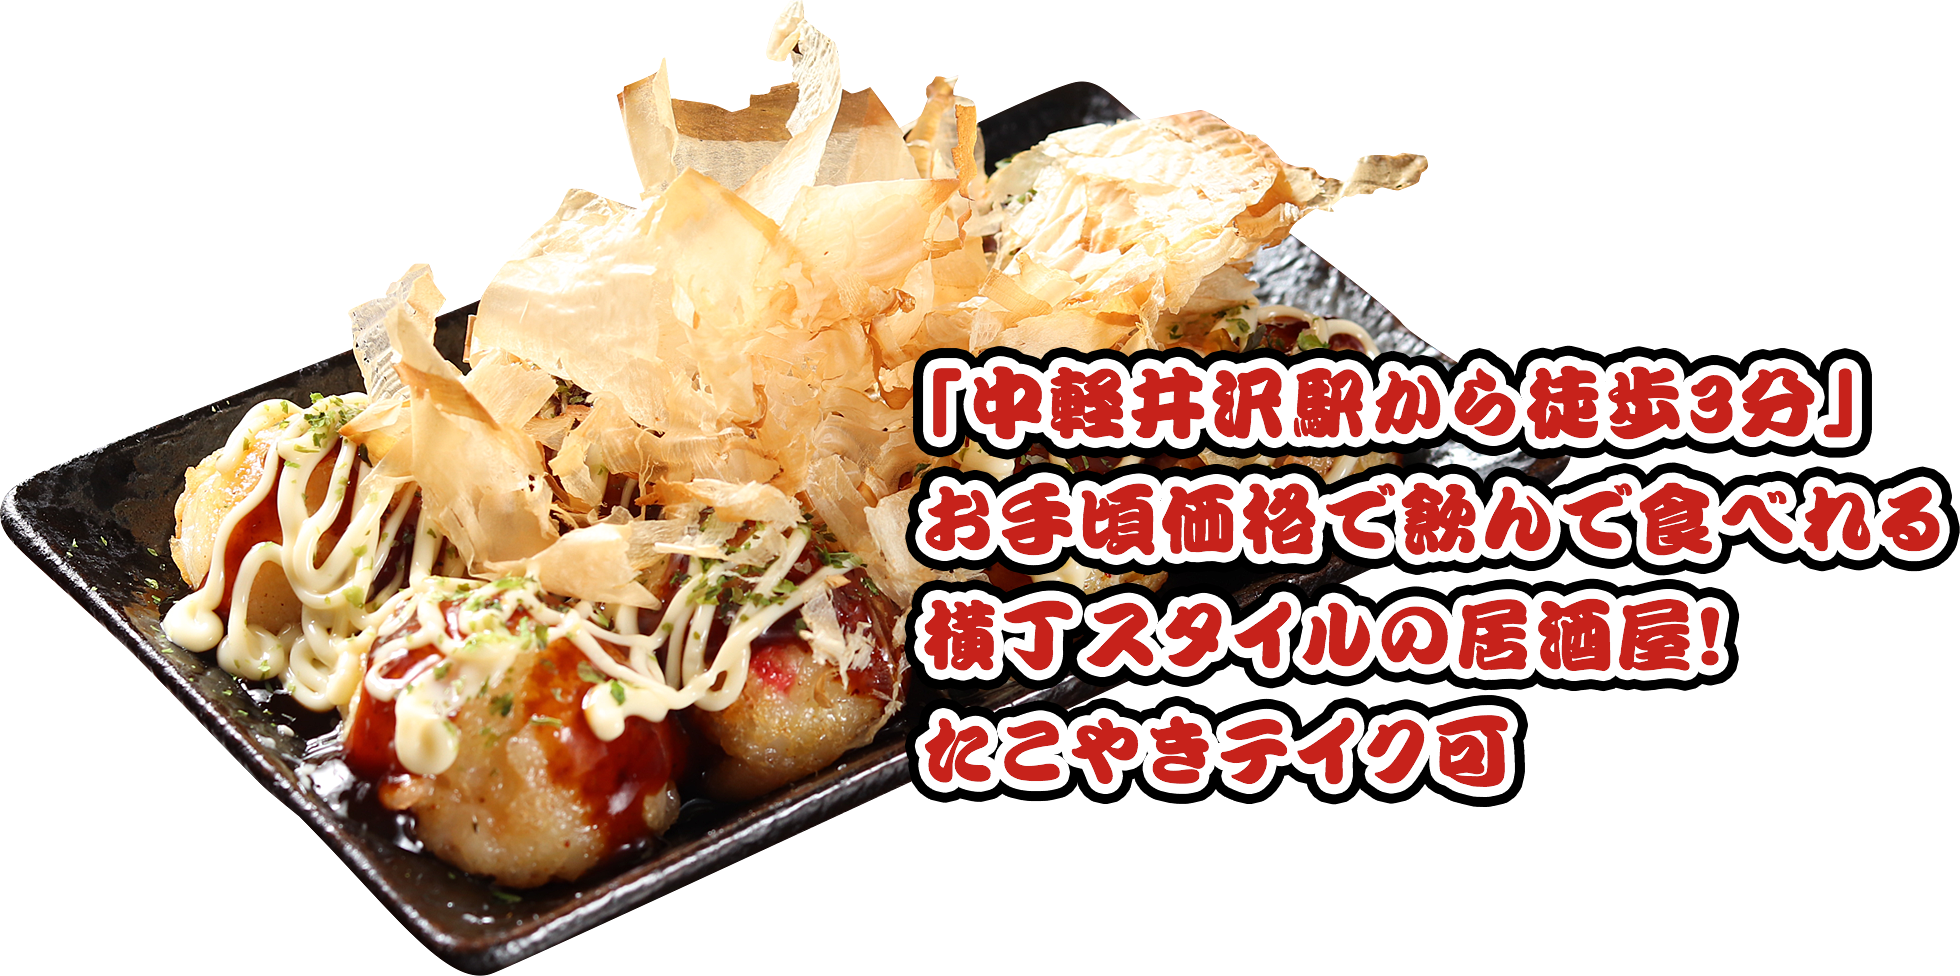 「中軽井沢駅から徒歩3分」お手頃価格で飲んで食べれる横丁スタイルの居酒屋！たこやきテイク可